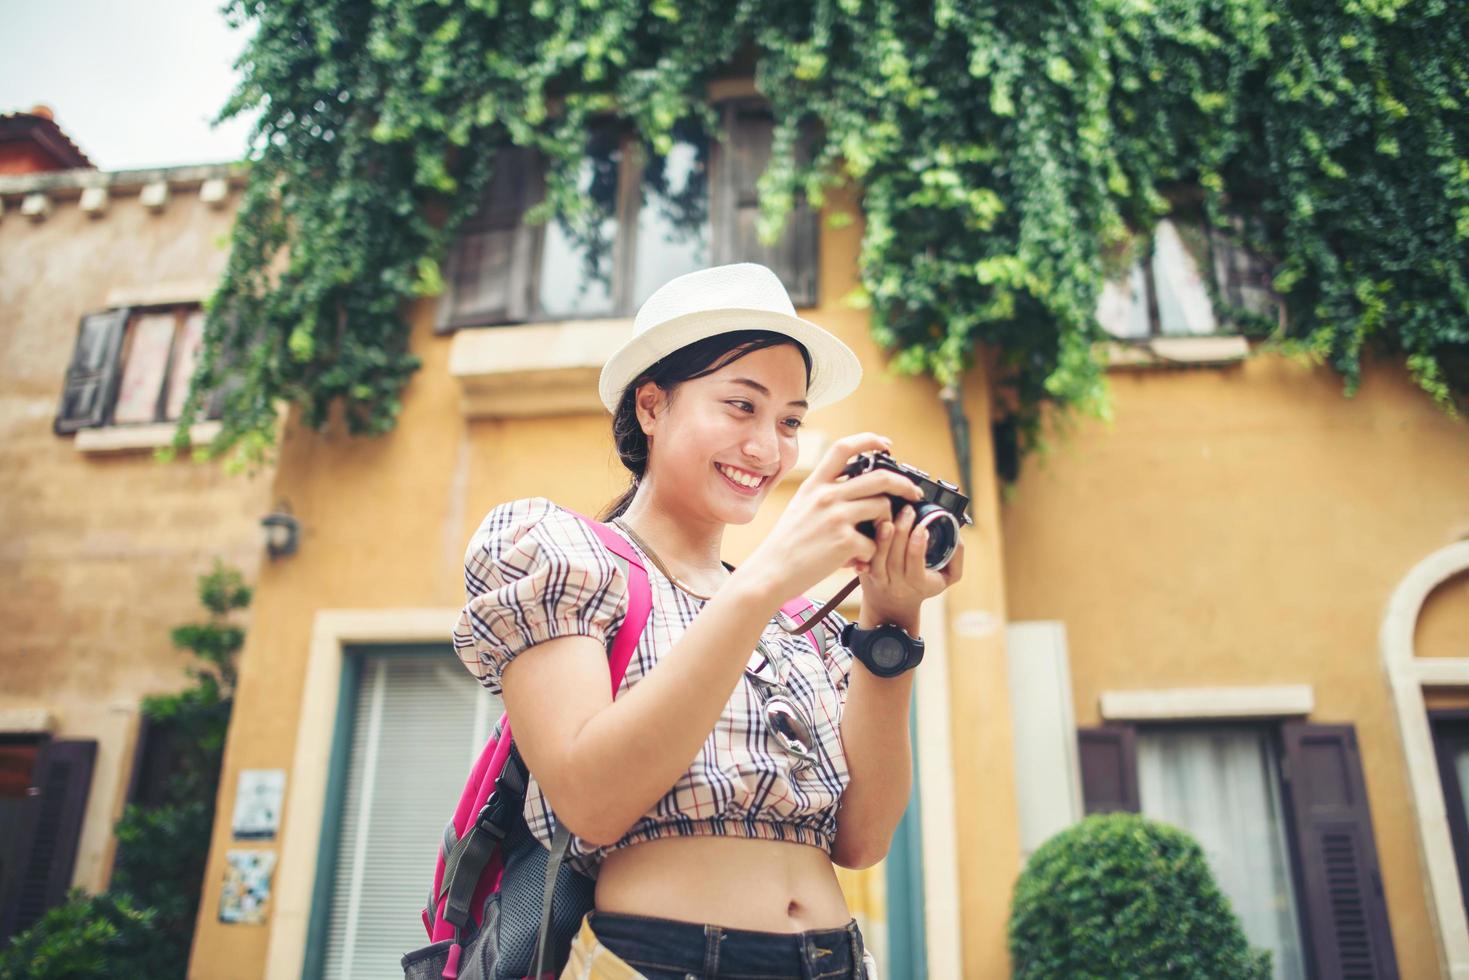 junge Hipsterfrau, die ein Foto im städtischen Umfeld genießt